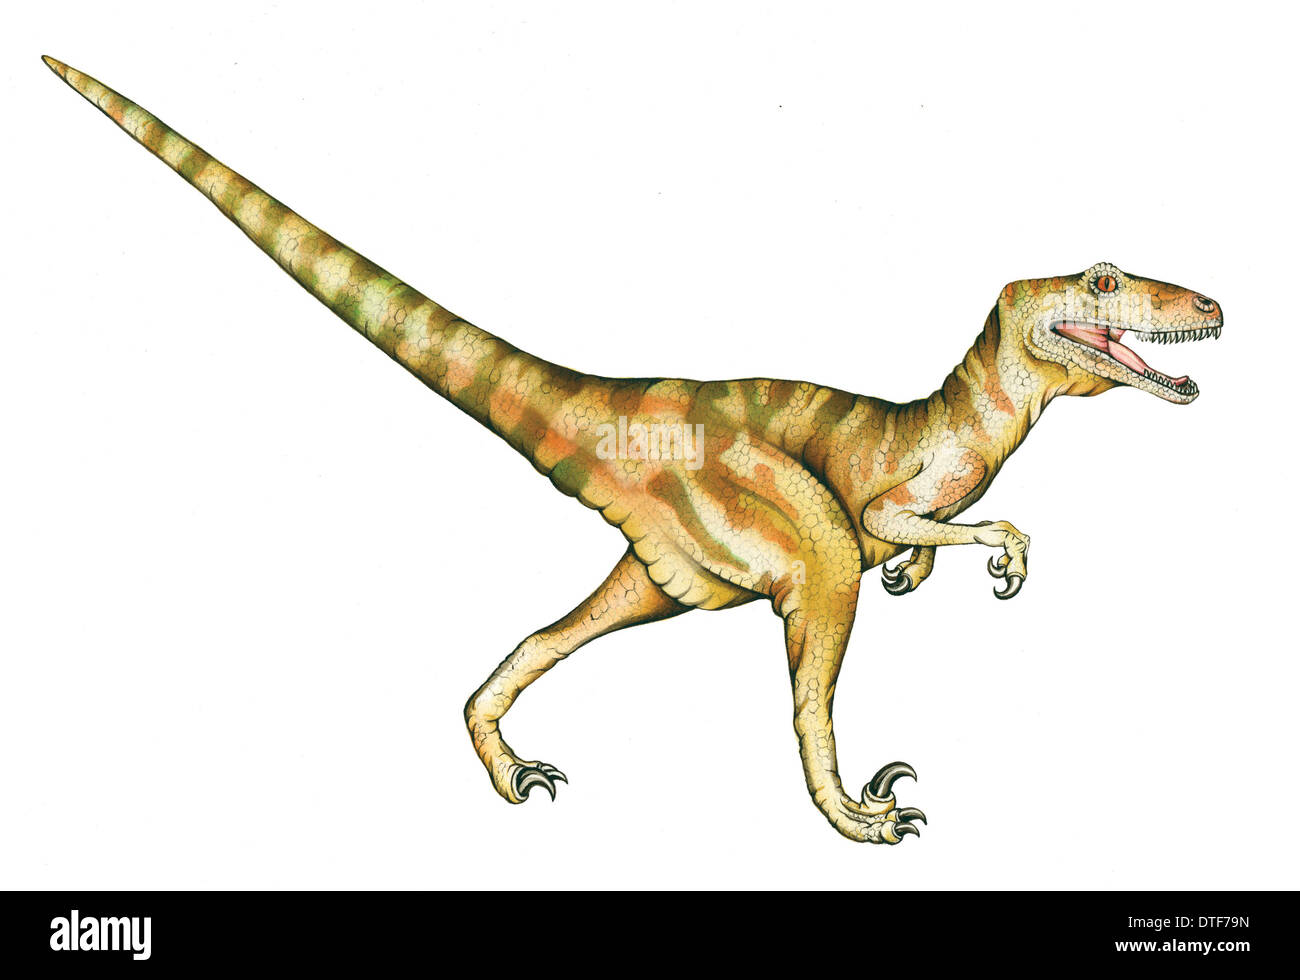 Dinosaur Deinonychus Stock Photo - Download Image Now - Deinonychus, 2015,  Animal - iStock